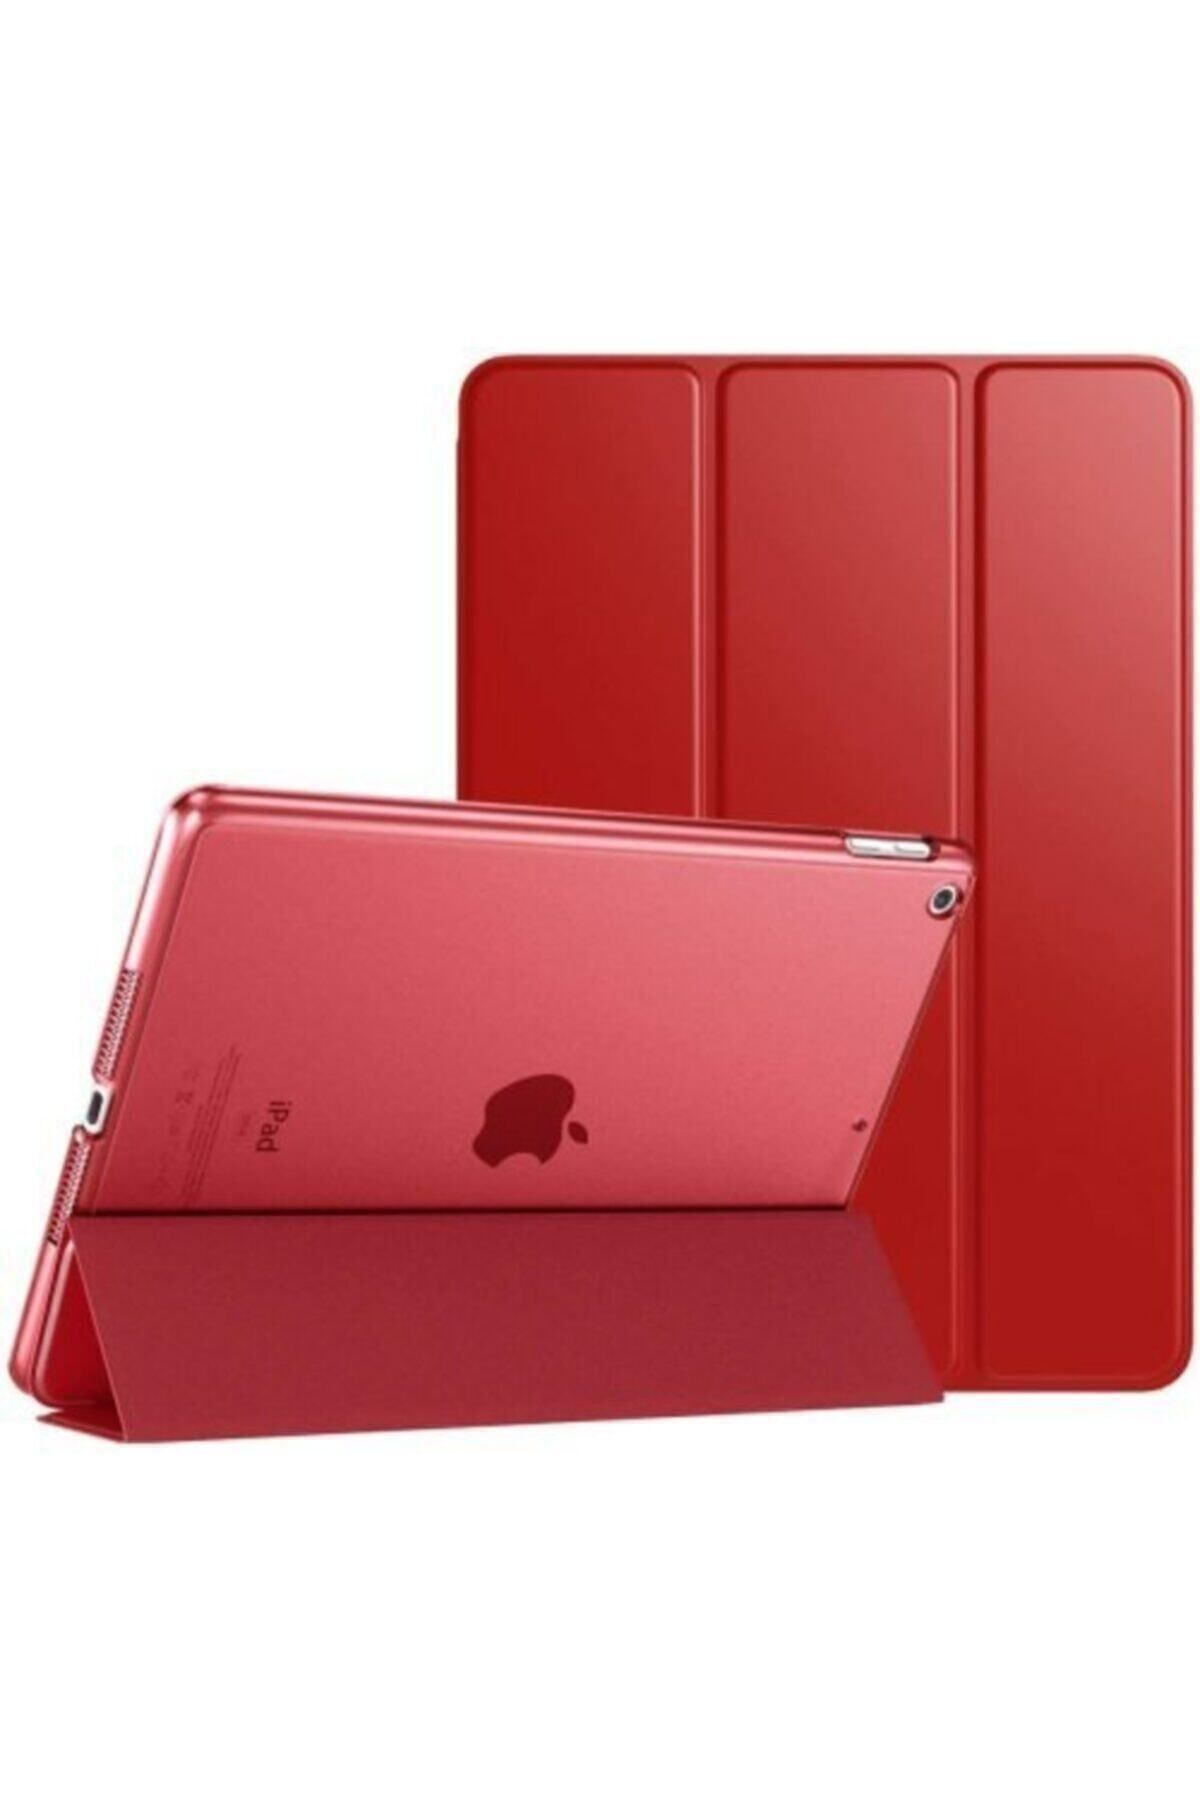 Teknoloji Gelsin Apple Ipad 5. 6. Nesil 9.7" Inc Stand Kılıf Smart Cover Katlanabilir Standlı Akıllı Kapak -kırmızı-